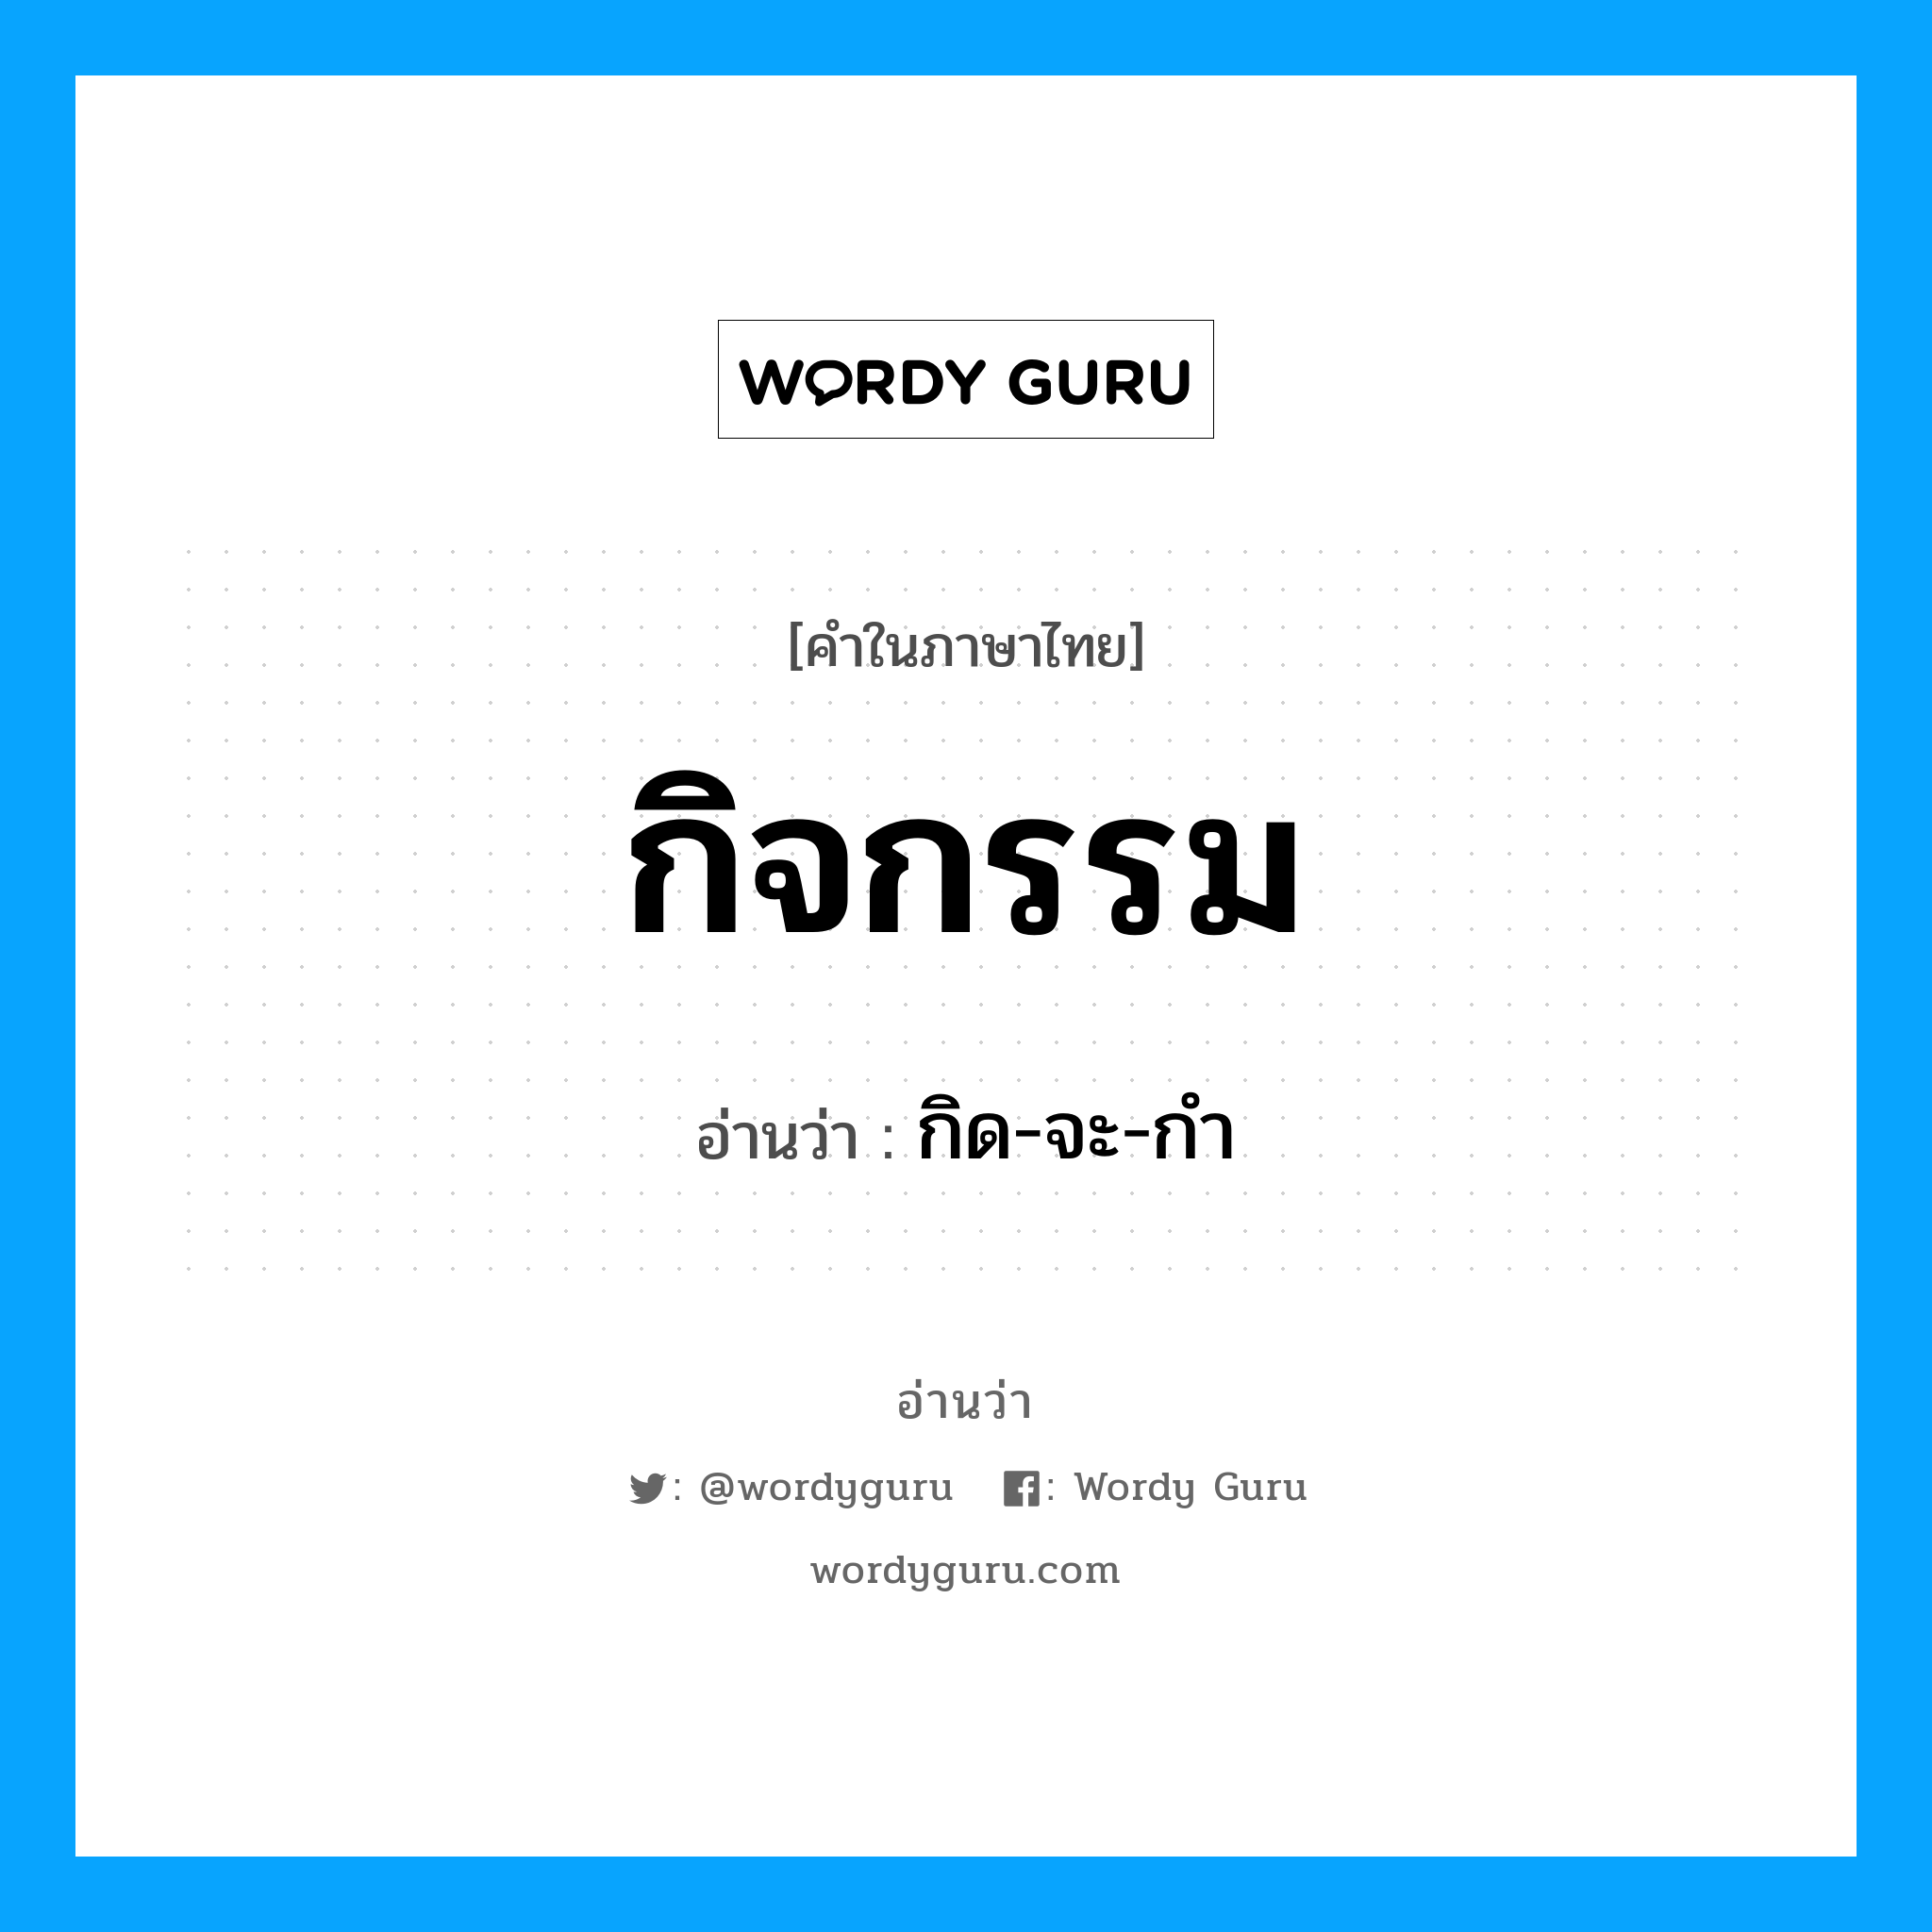 กิด-จะ-กำ เป็นคำอ่านของคำไหน?, คำในภาษาไทย กิด-จะ-กำ อ่านว่า กิจกรรม